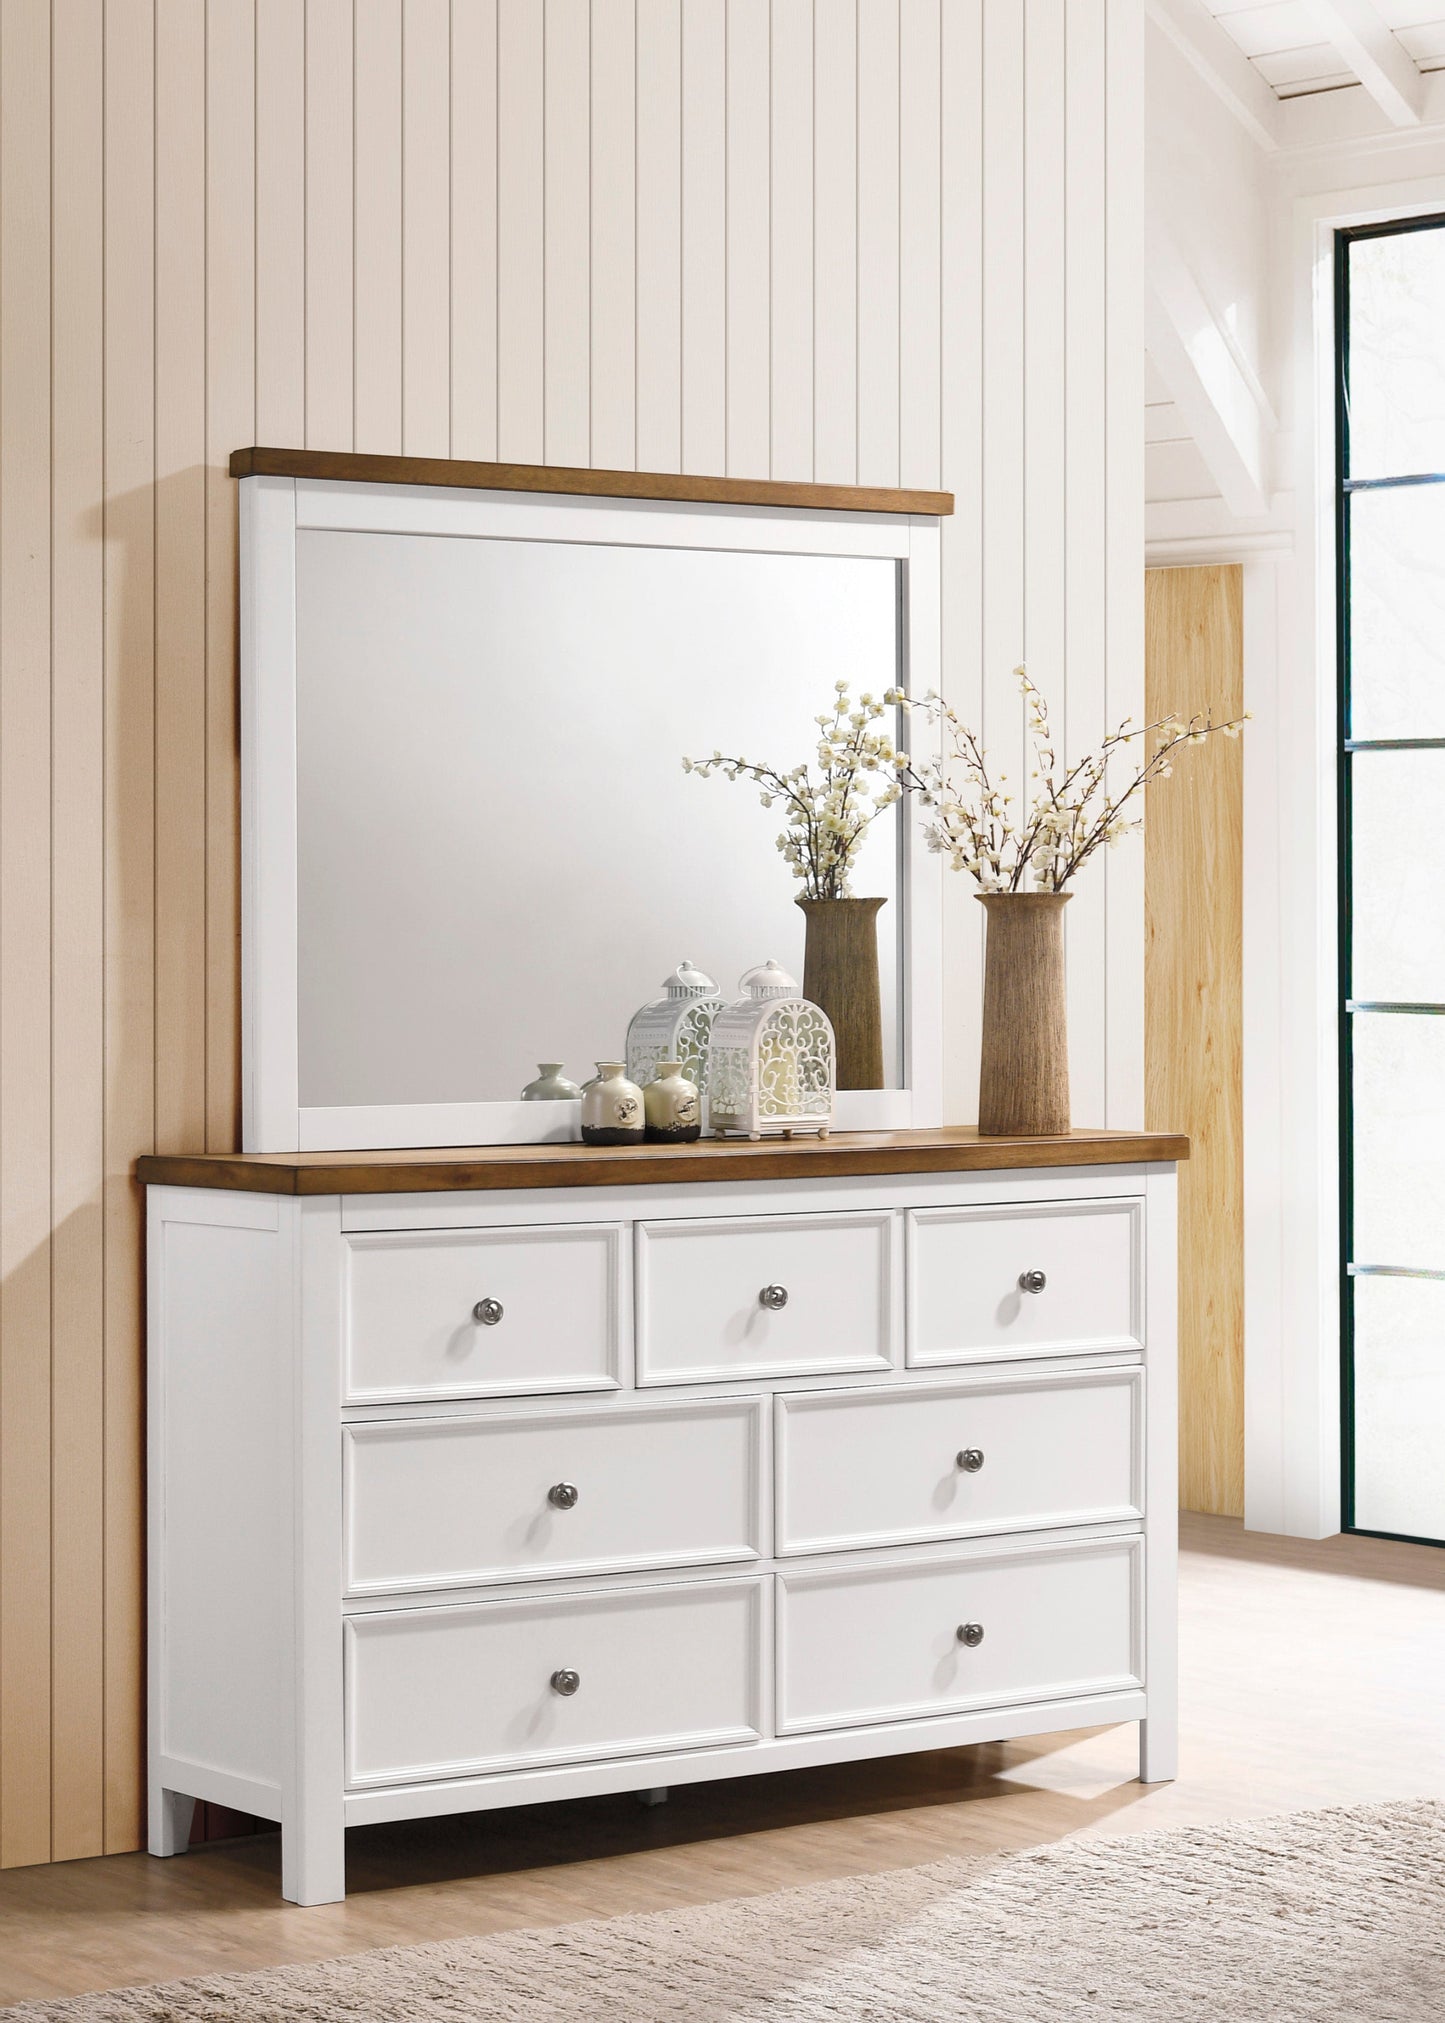 Westconi Dresser&Mirror - dresser